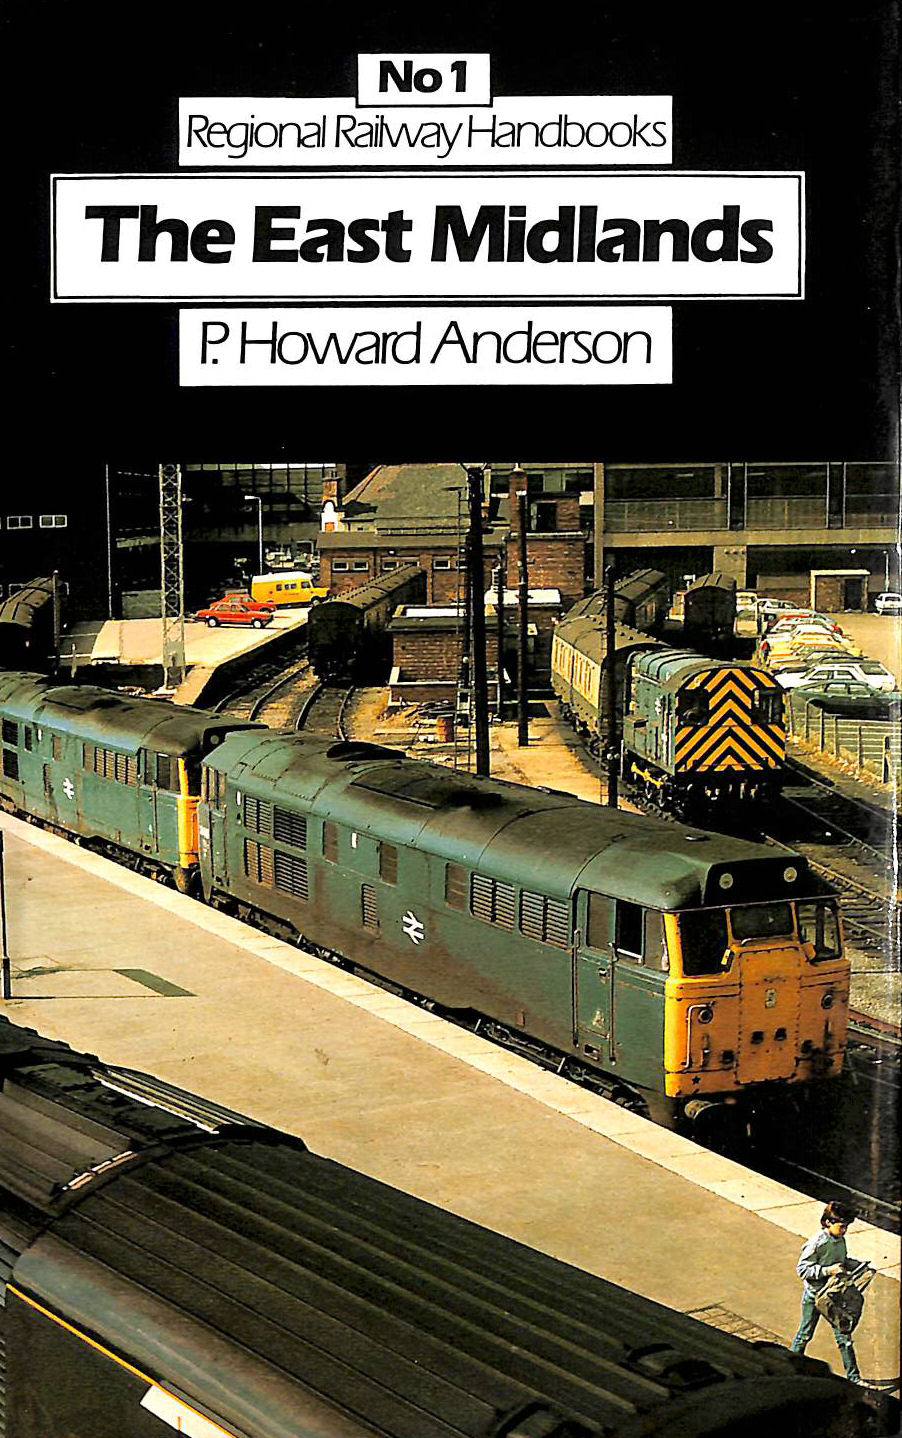 ANDERSON, PAUL - Regional Railway Handbook: East Midlands No. 1 (Regional railway handbooks)